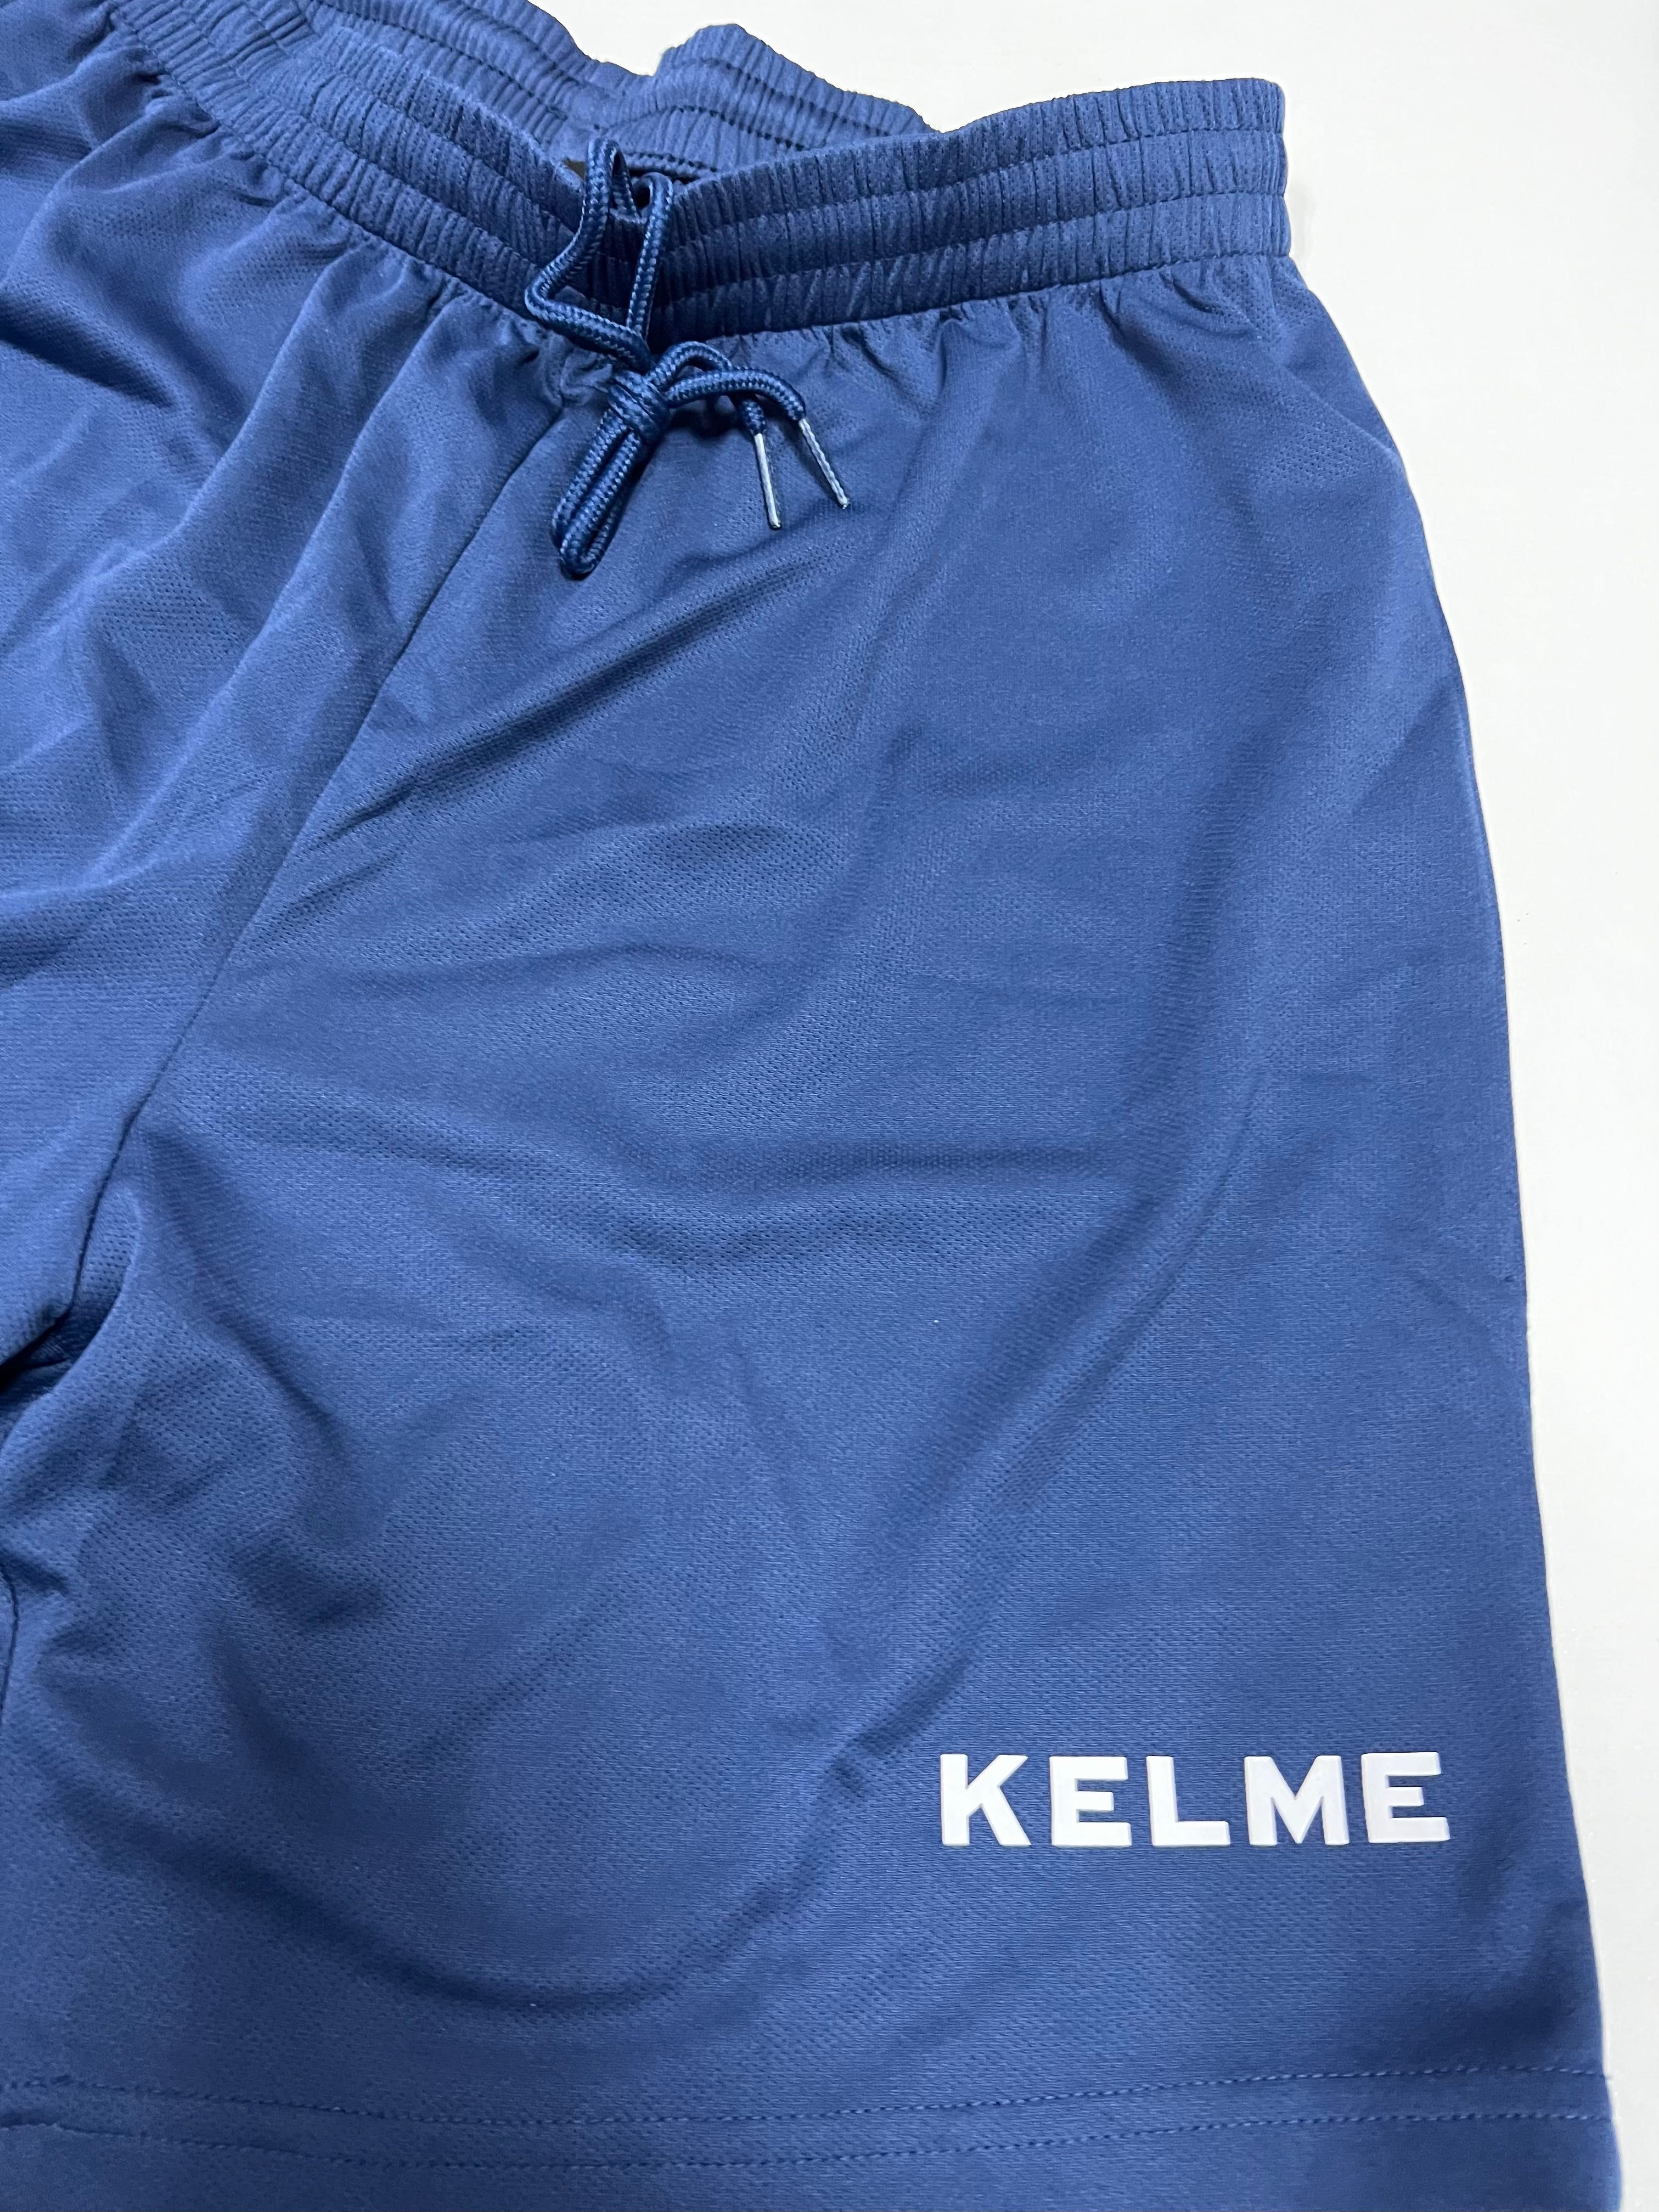 Продам футбольную форму KELME (футболка,шорты,гетры) с номерами.